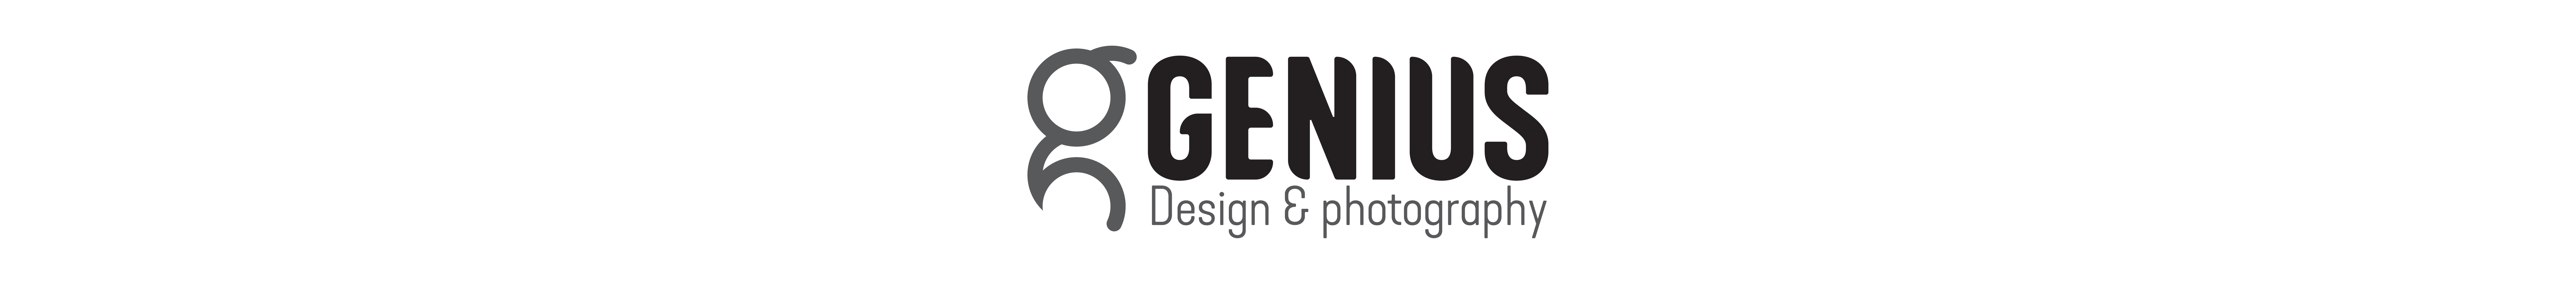 Genius studios's profile banner